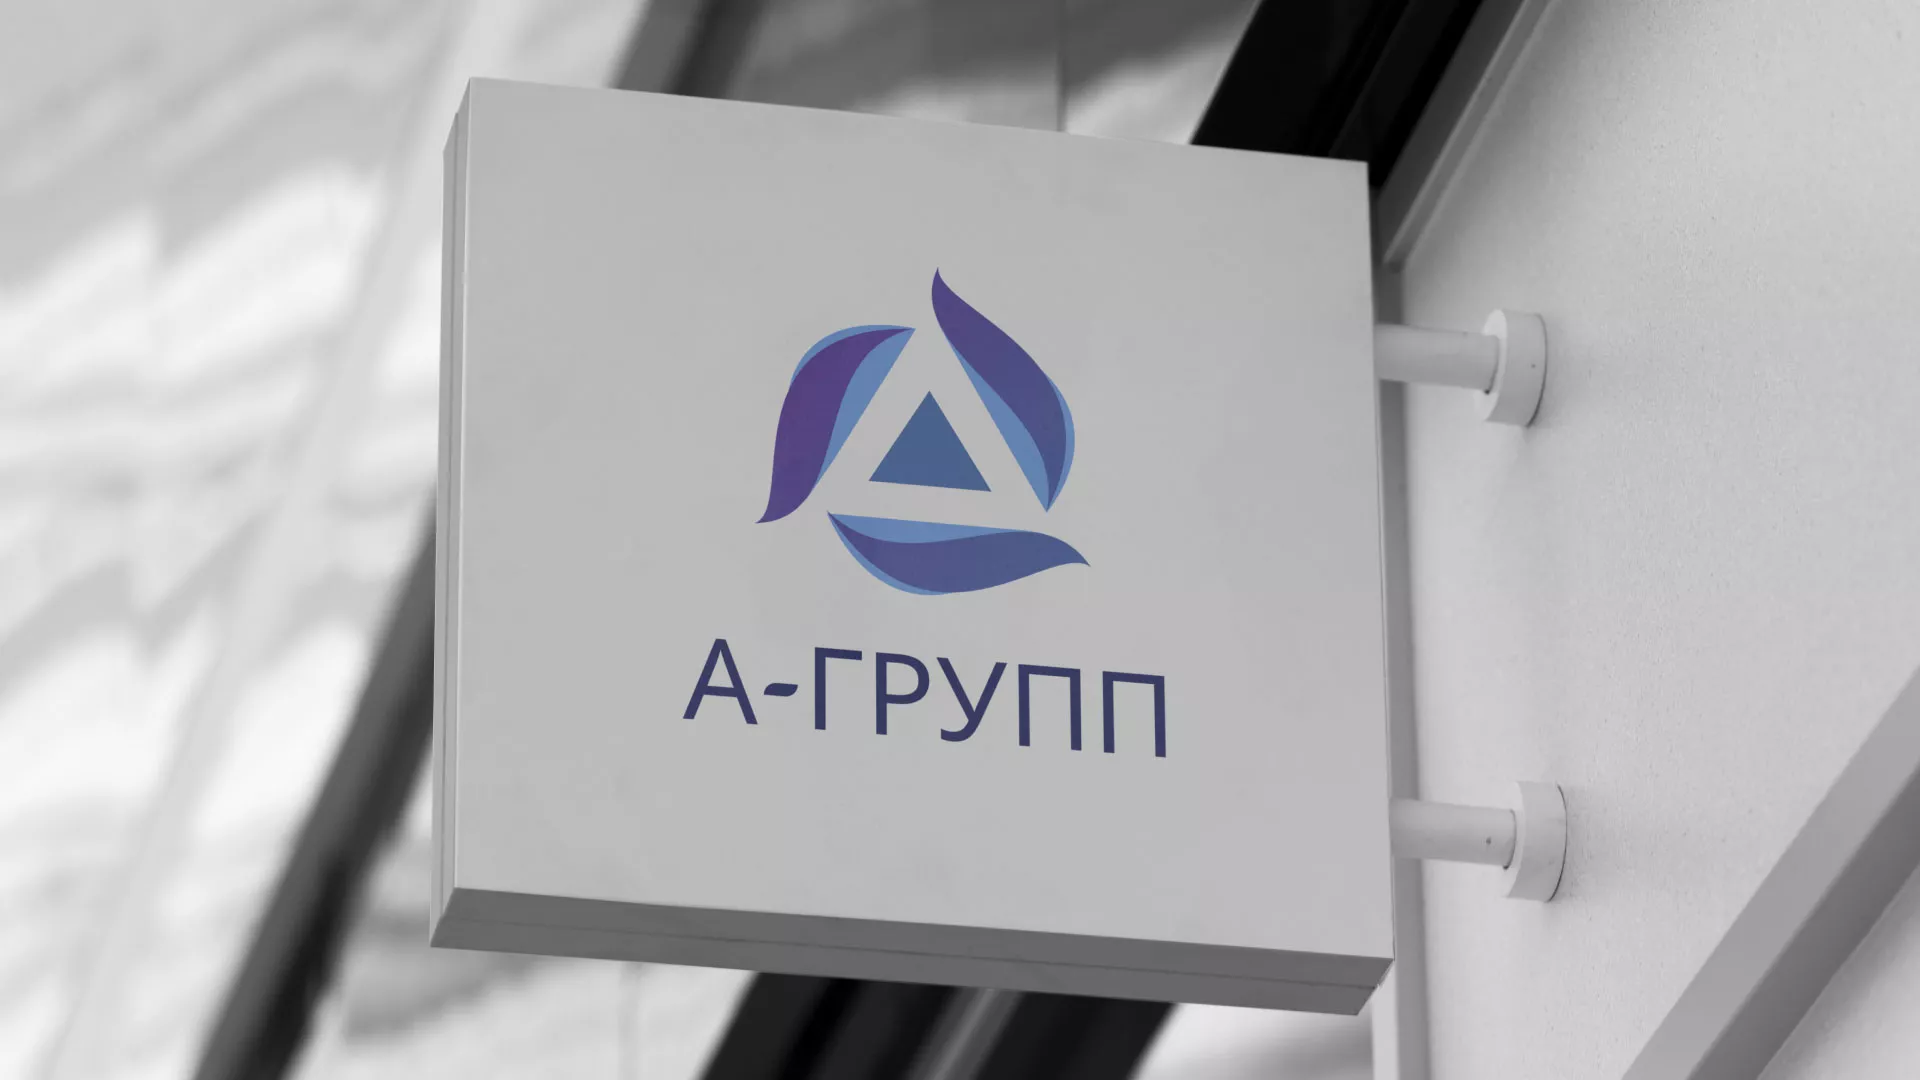 Создание логотипа компании «А-ГРУПП» в Твери